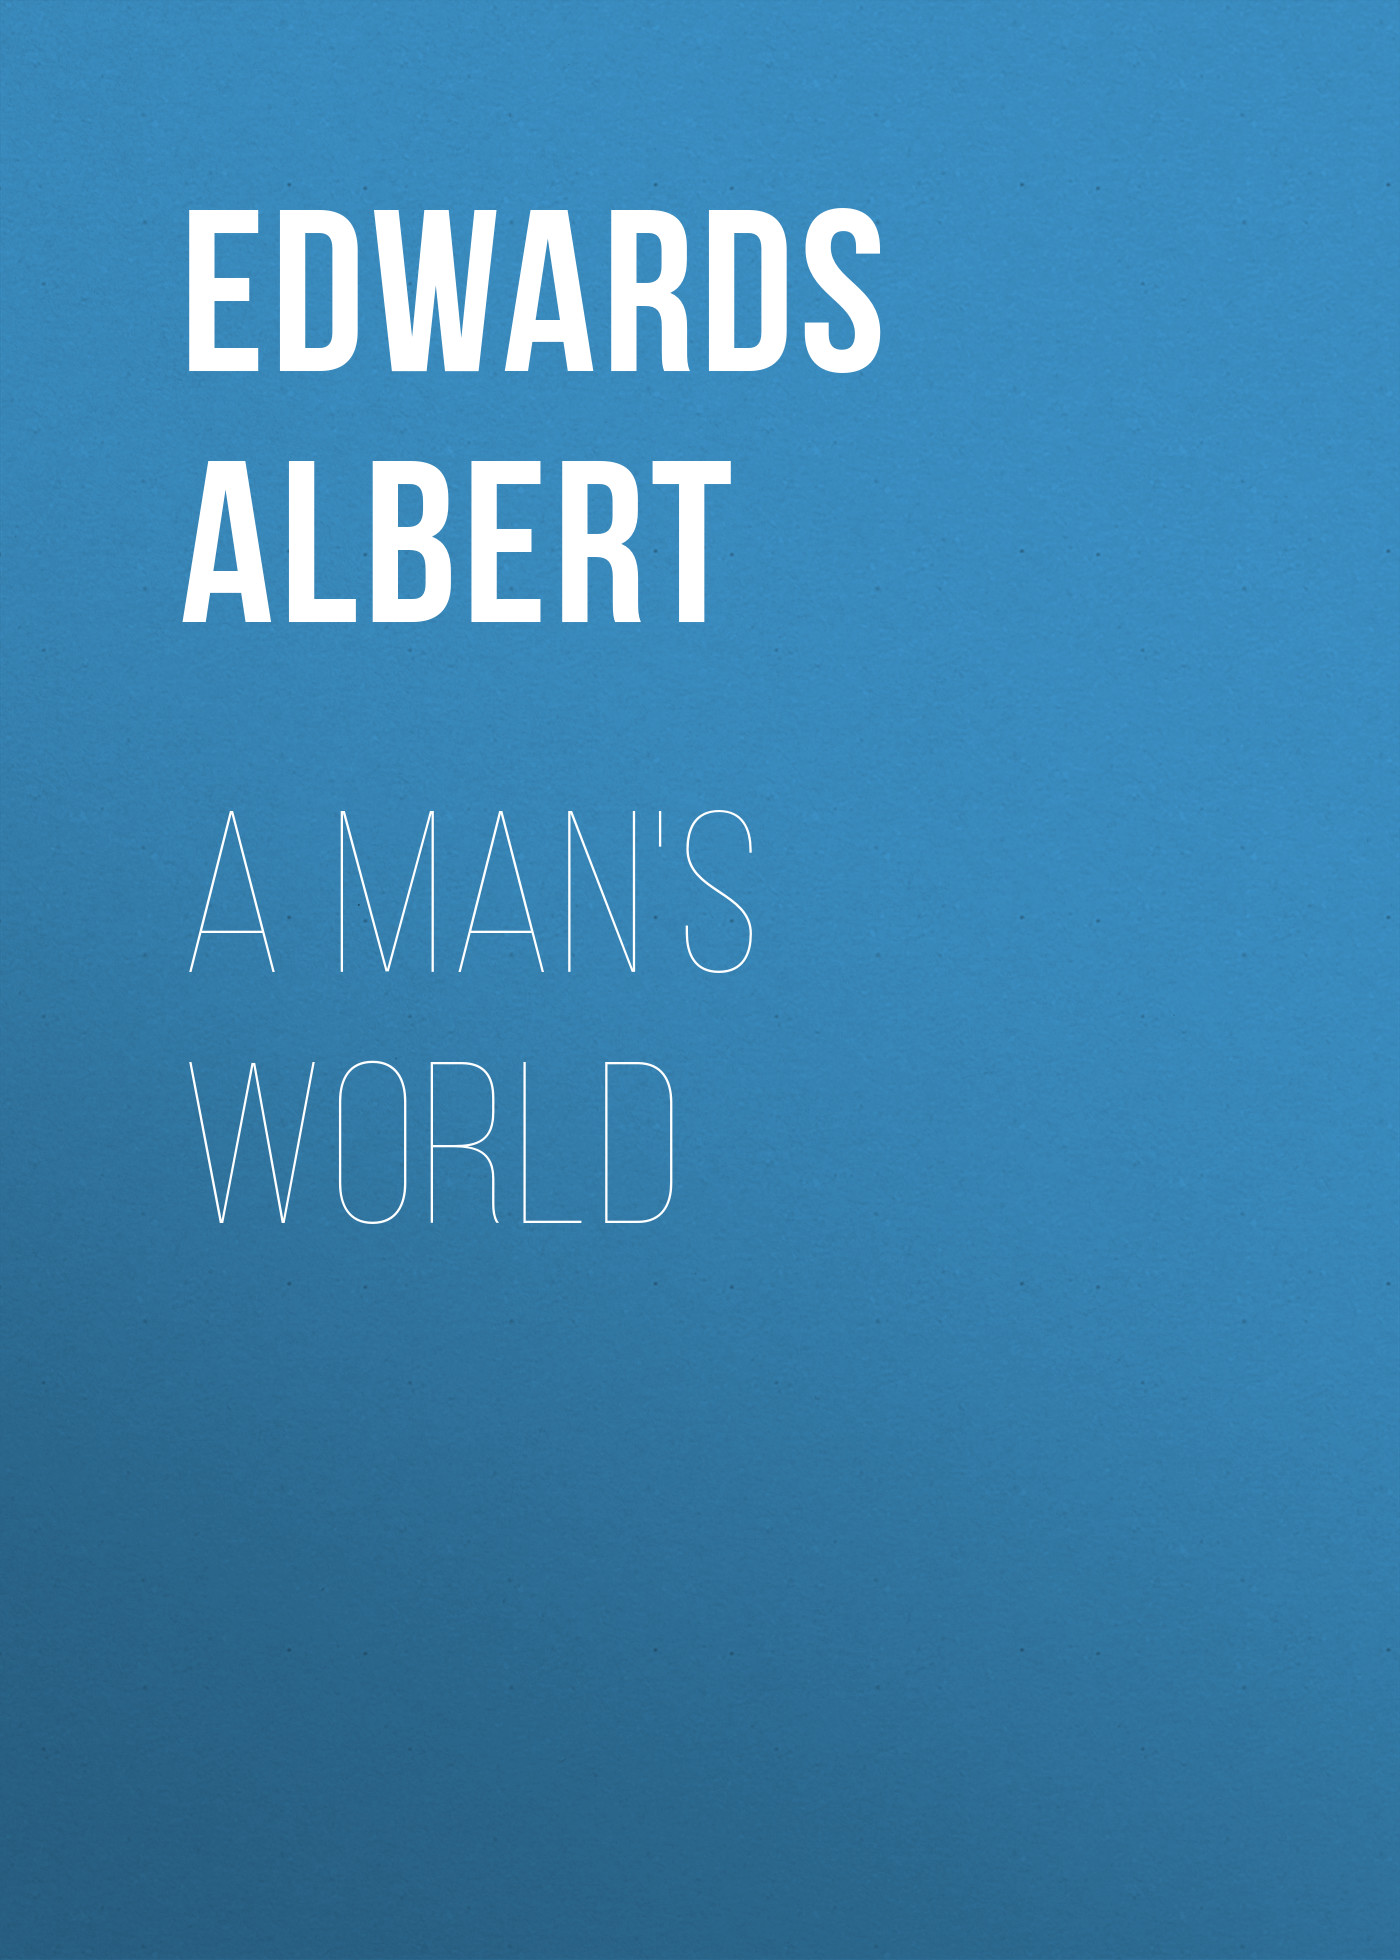 Книга A Man's World из серии , созданная Albert Edwards, может относится к жанру Зарубежная старинная литература, Зарубежная классика. Стоимость электронной книги A Man's World с идентификатором 24713401 составляет 0 руб.